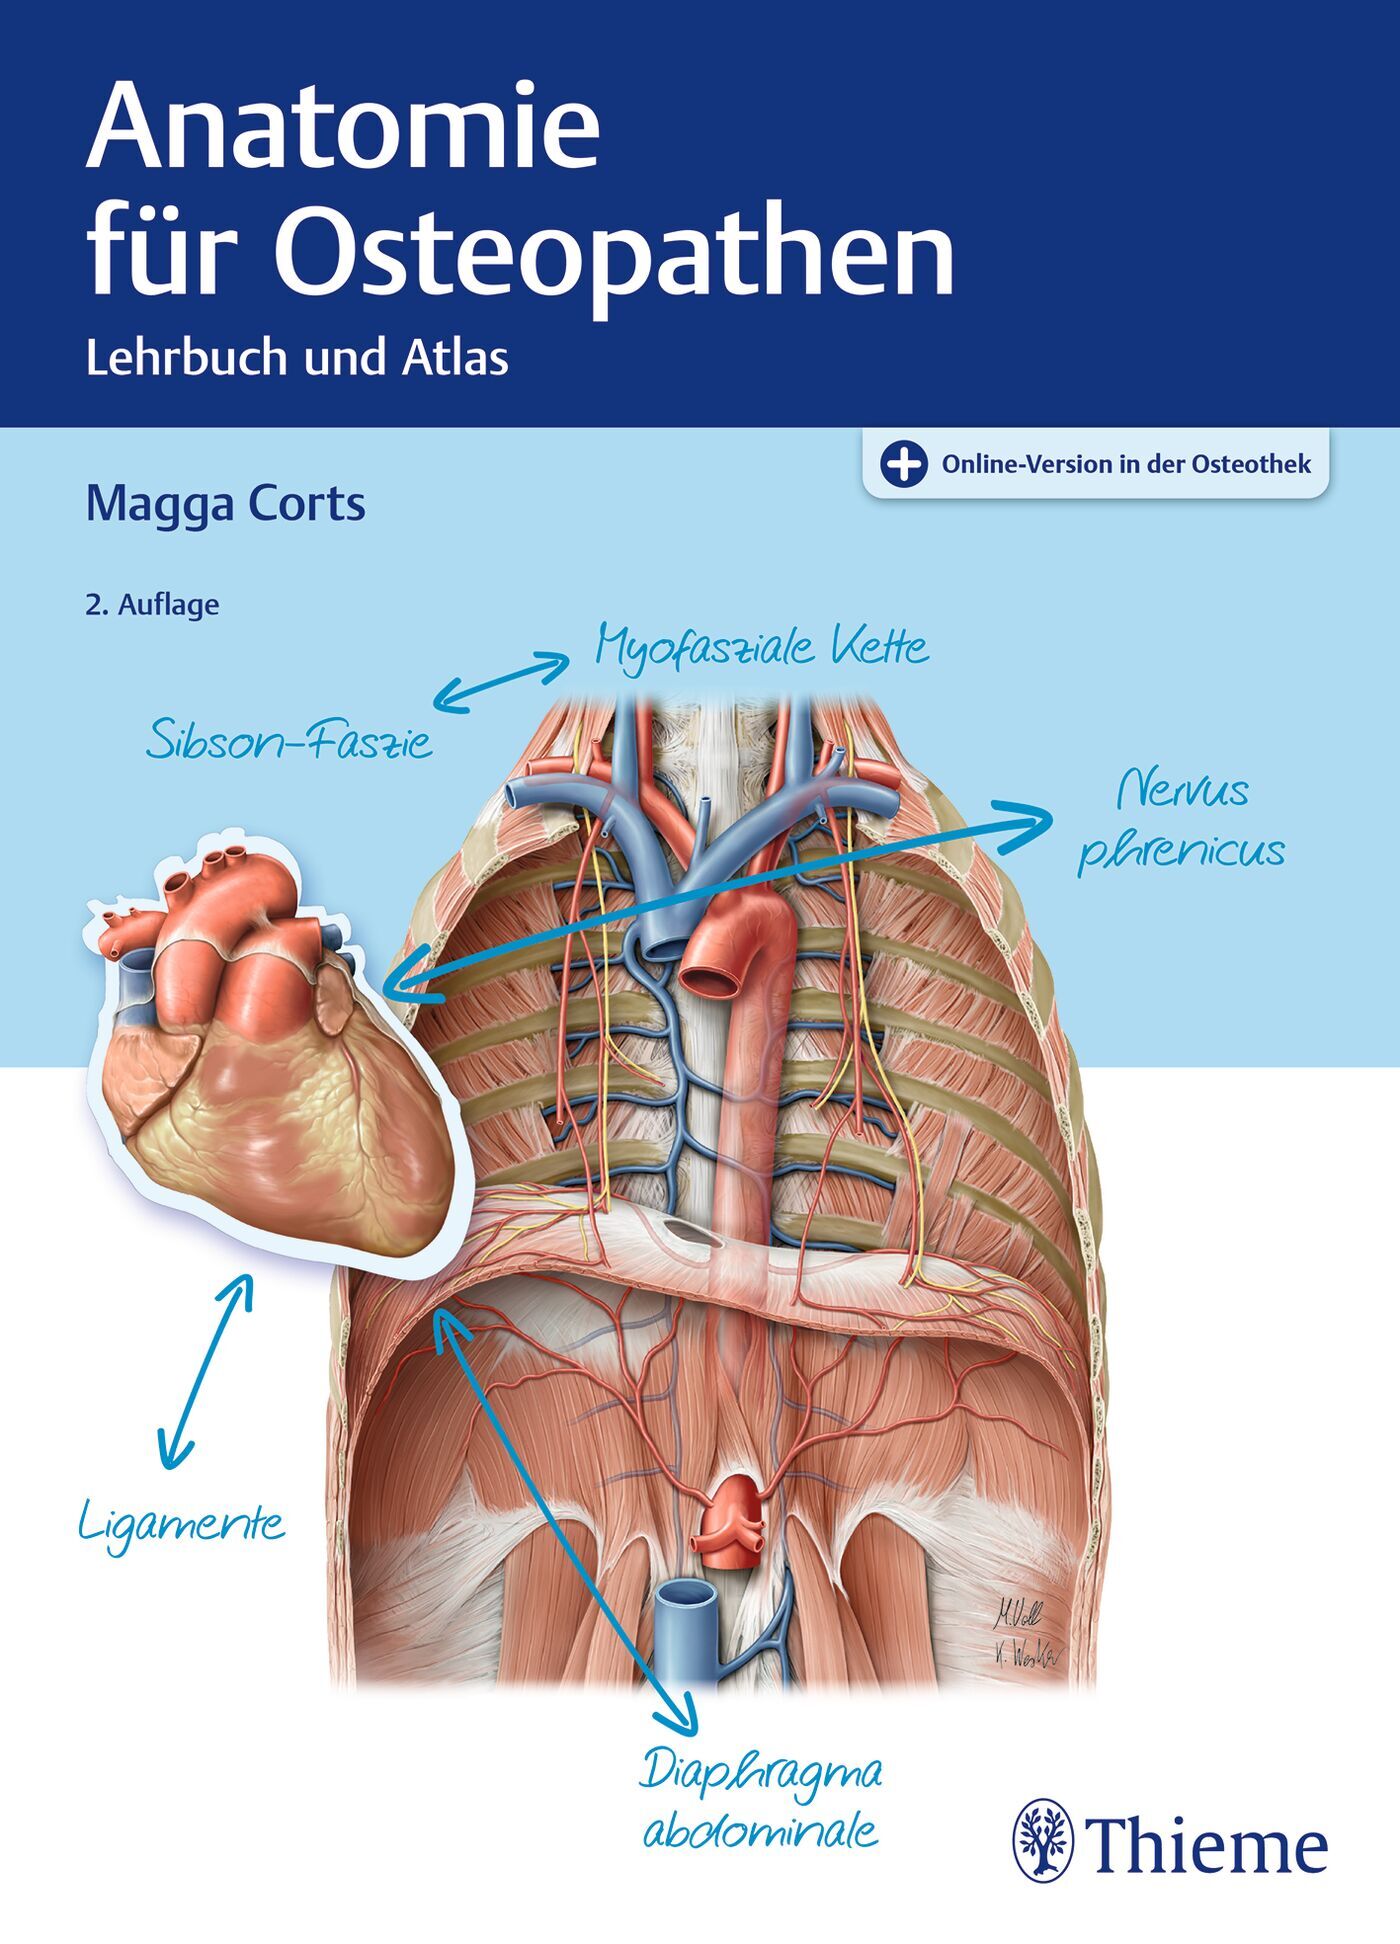 Anatomie für Osteopathen, 9783132445888